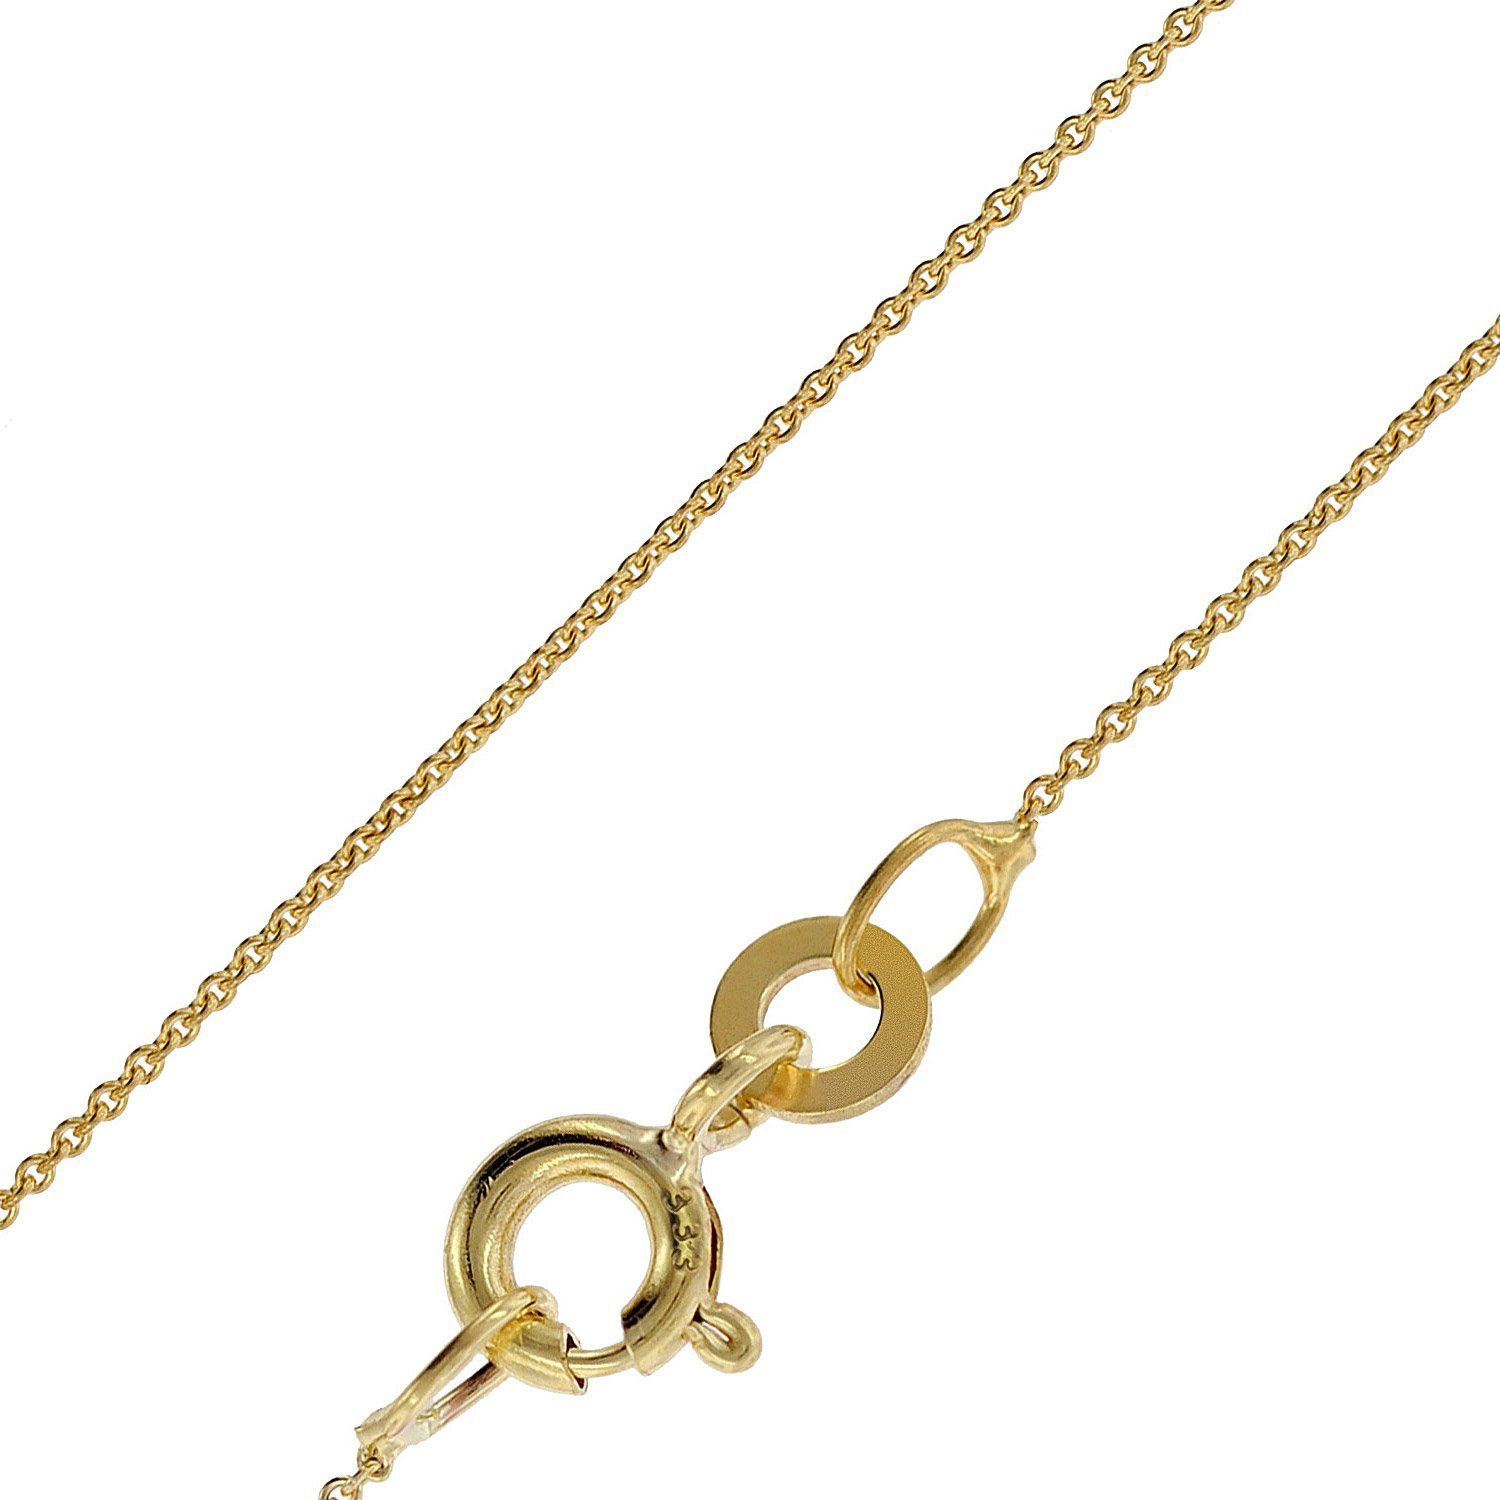 Goldketten » Hochwertige Accessoires für dein Outfit | OTTO